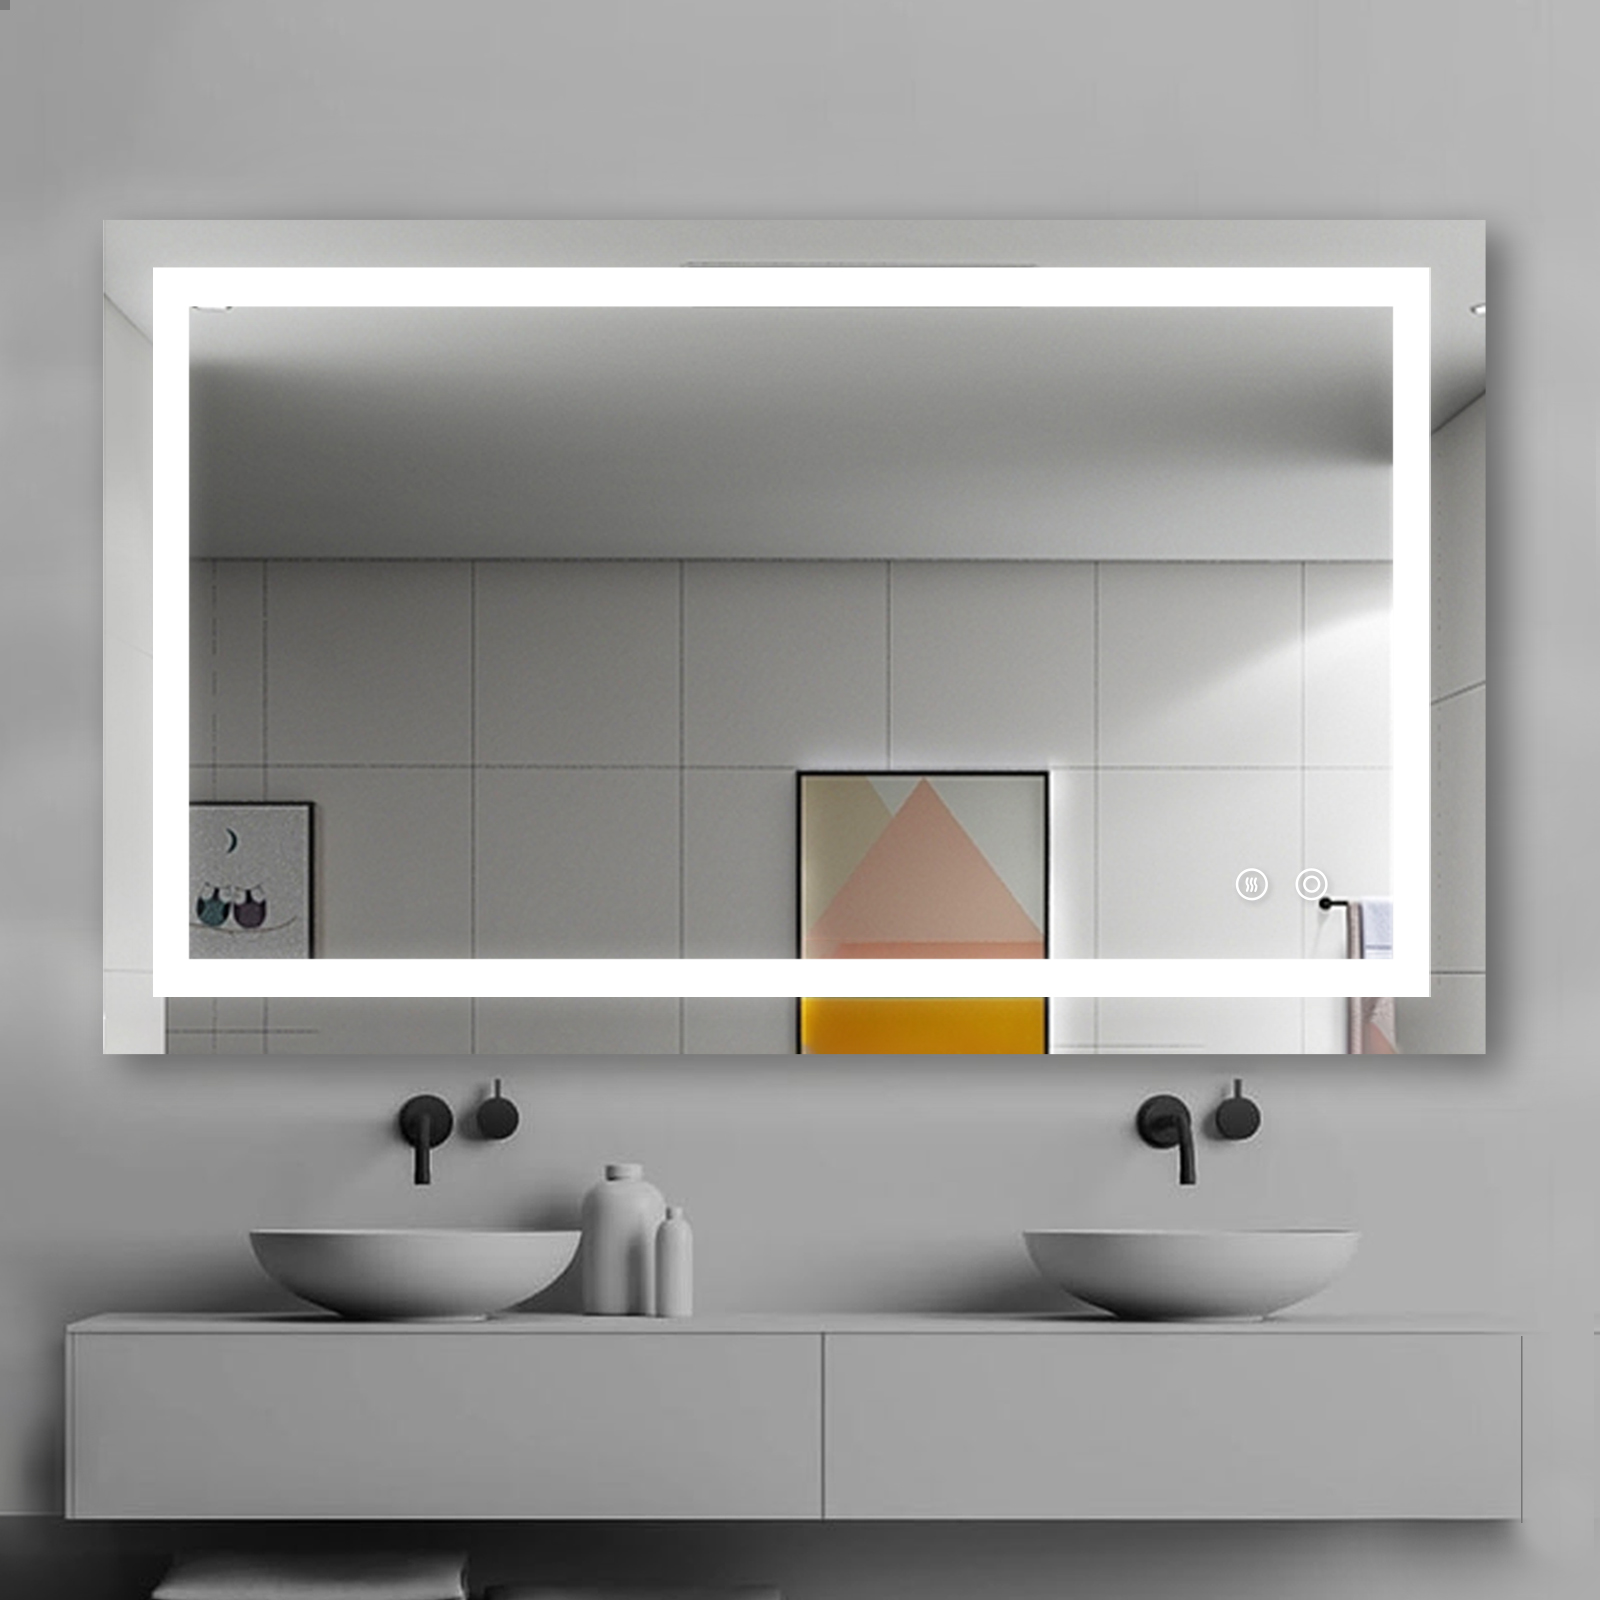 Acquista Specchio da parete per bagno a LED,Specchio da parete per bagno a LED prezzi,Specchio da parete per bagno a LED marche,Specchio da parete per bagno a LED Produttori,Specchio da parete per bagno a LED Citazioni,Specchio da parete per bagno a LED  l'azienda,